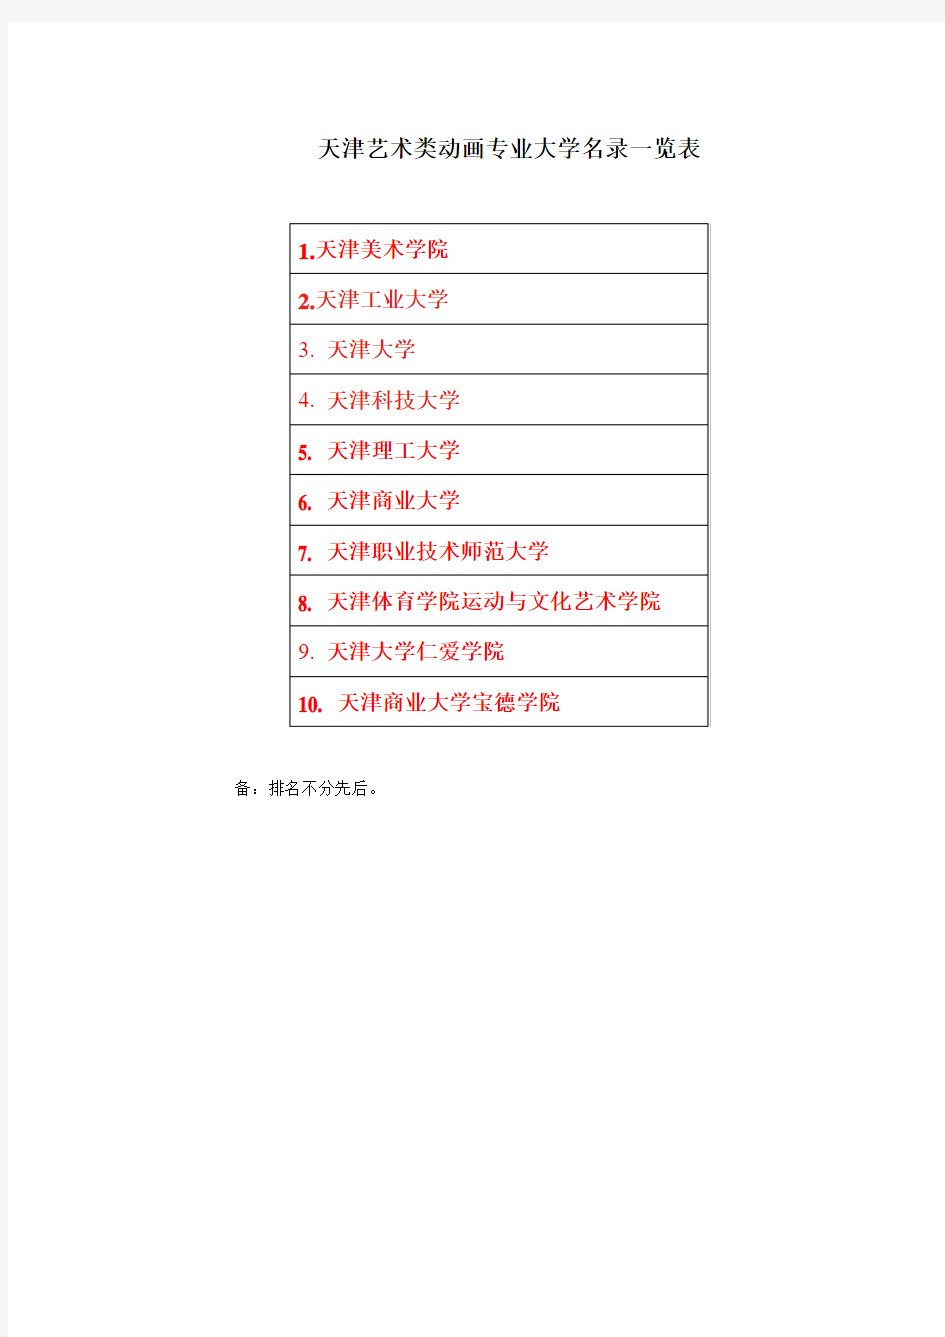 天津动画类大学名录一览表